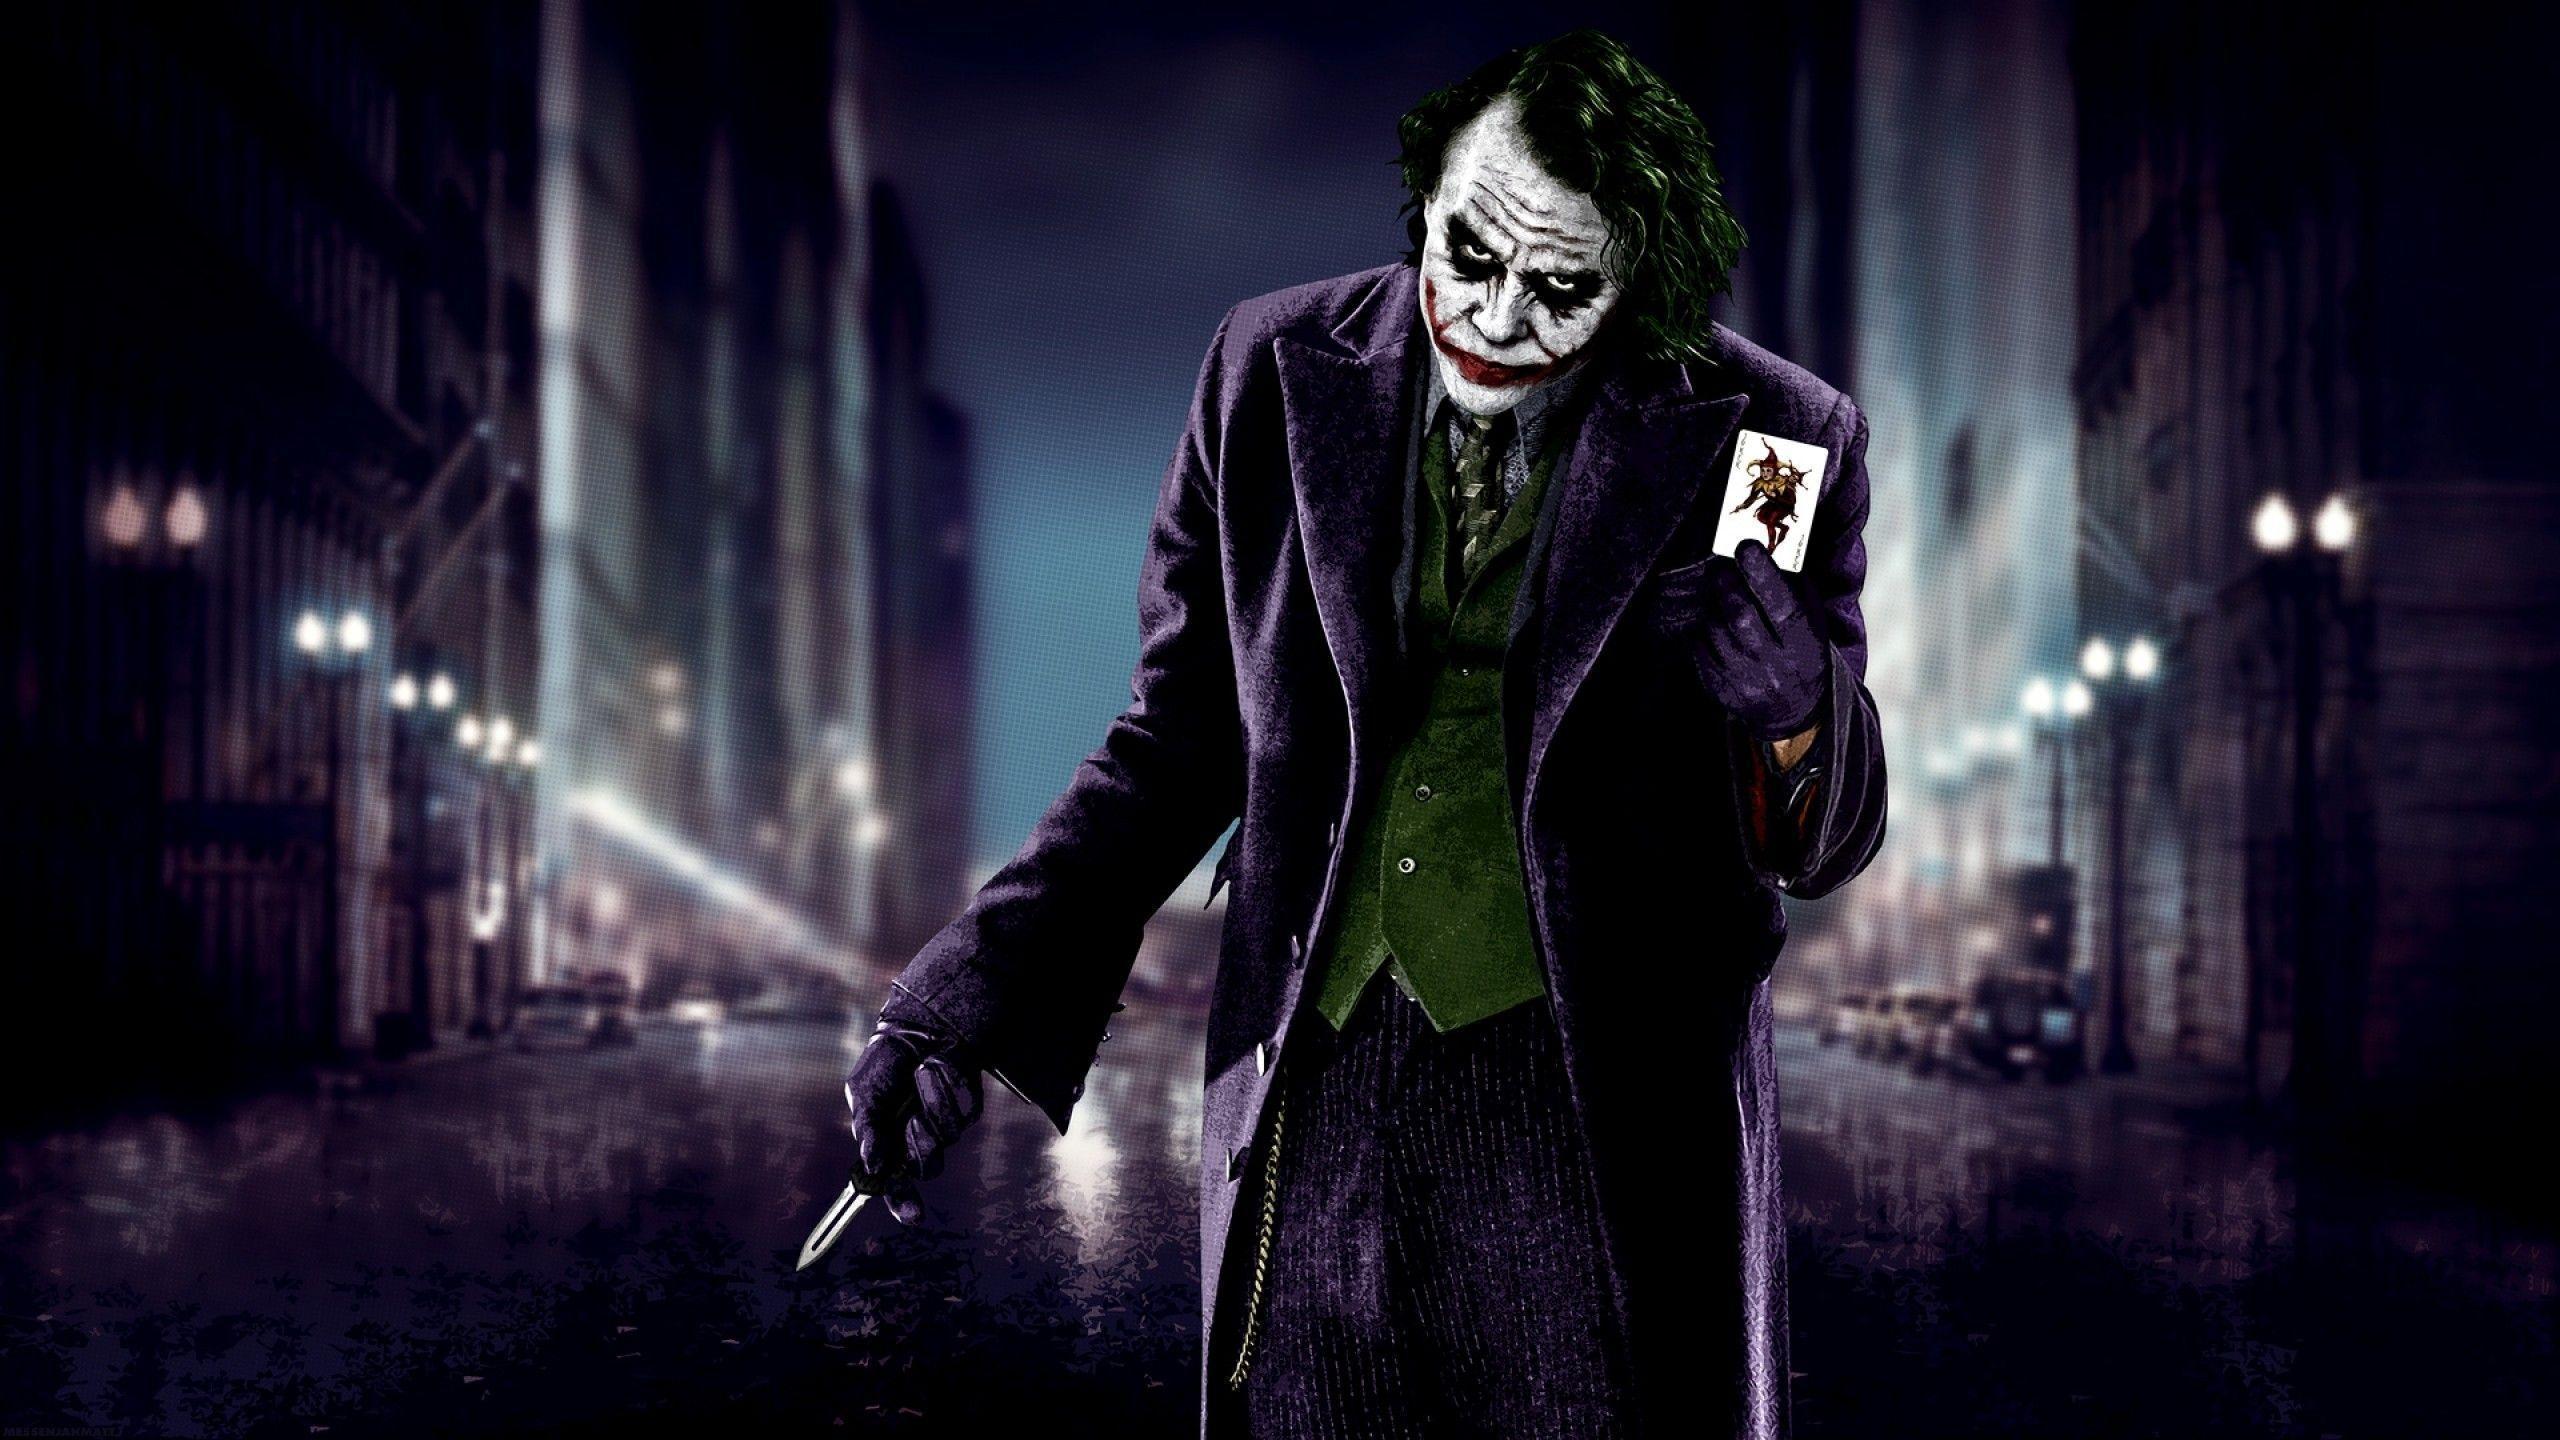 The Joker Wallpaper 2560x1440